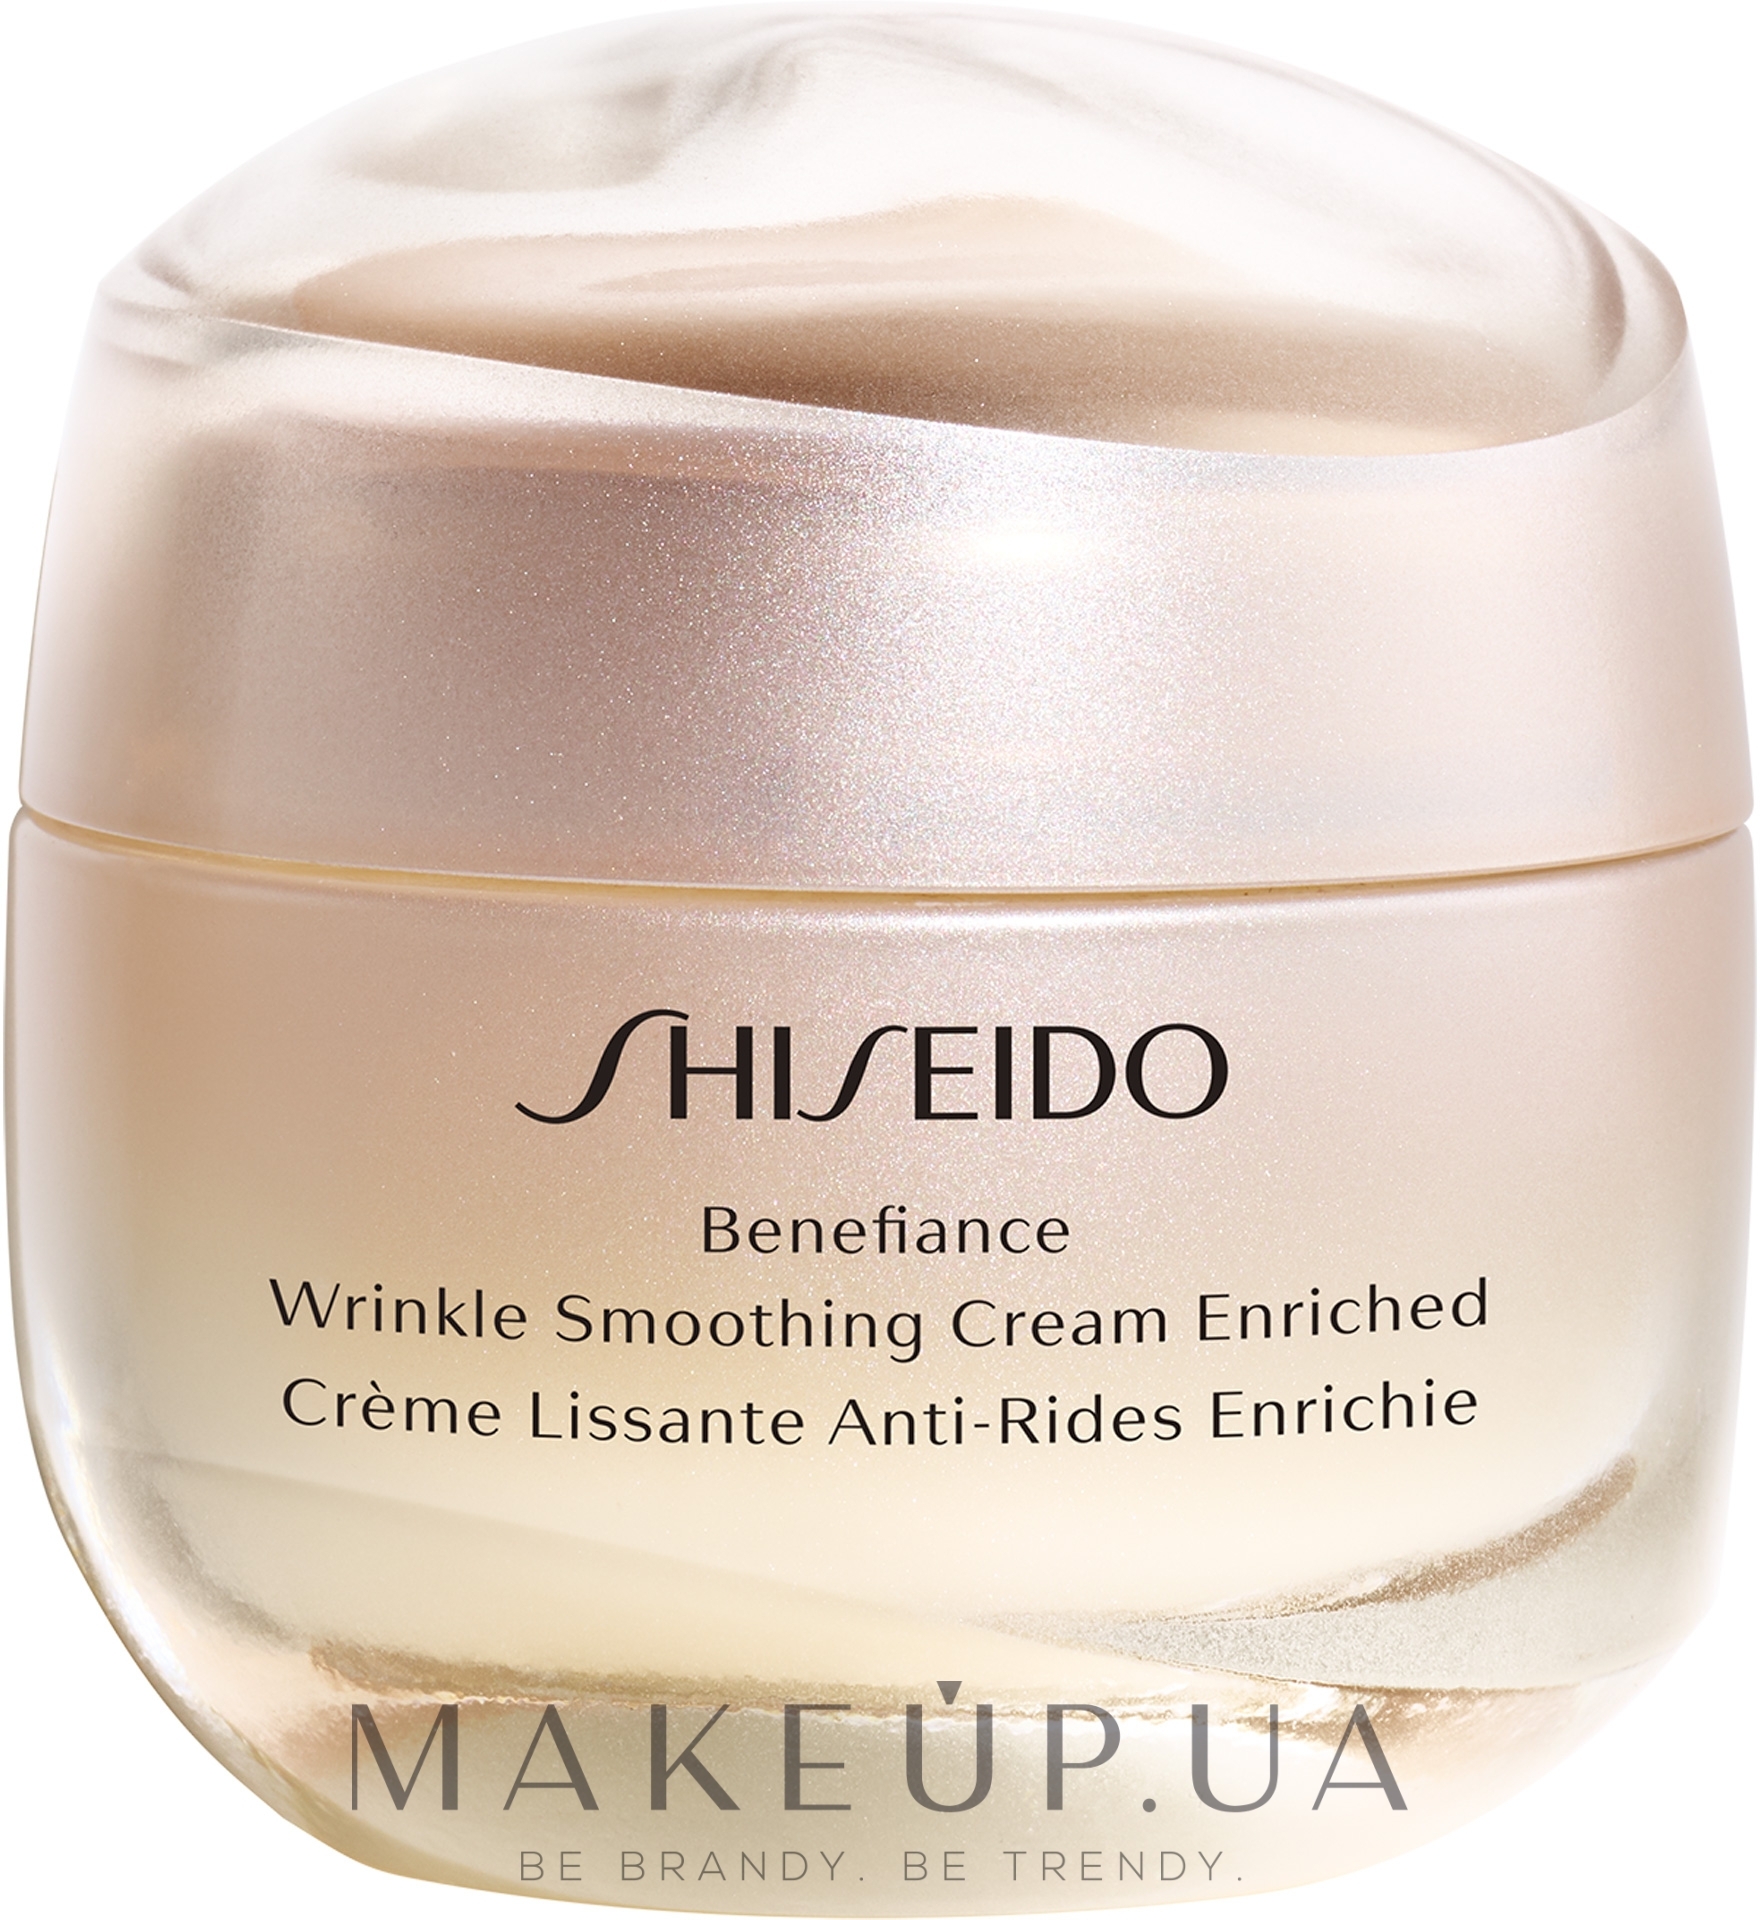 Shiseido benefiance wrinkle. Shiseido Wrinkle Smoothing Cream. Shiseido Benefiance. Шисейдо крем антивозрастной. Shiseido Ginza Tokyo Benefiance Wrinkle Smoothing Day Cream broad Spectrum SPF 23 Sunscreen.